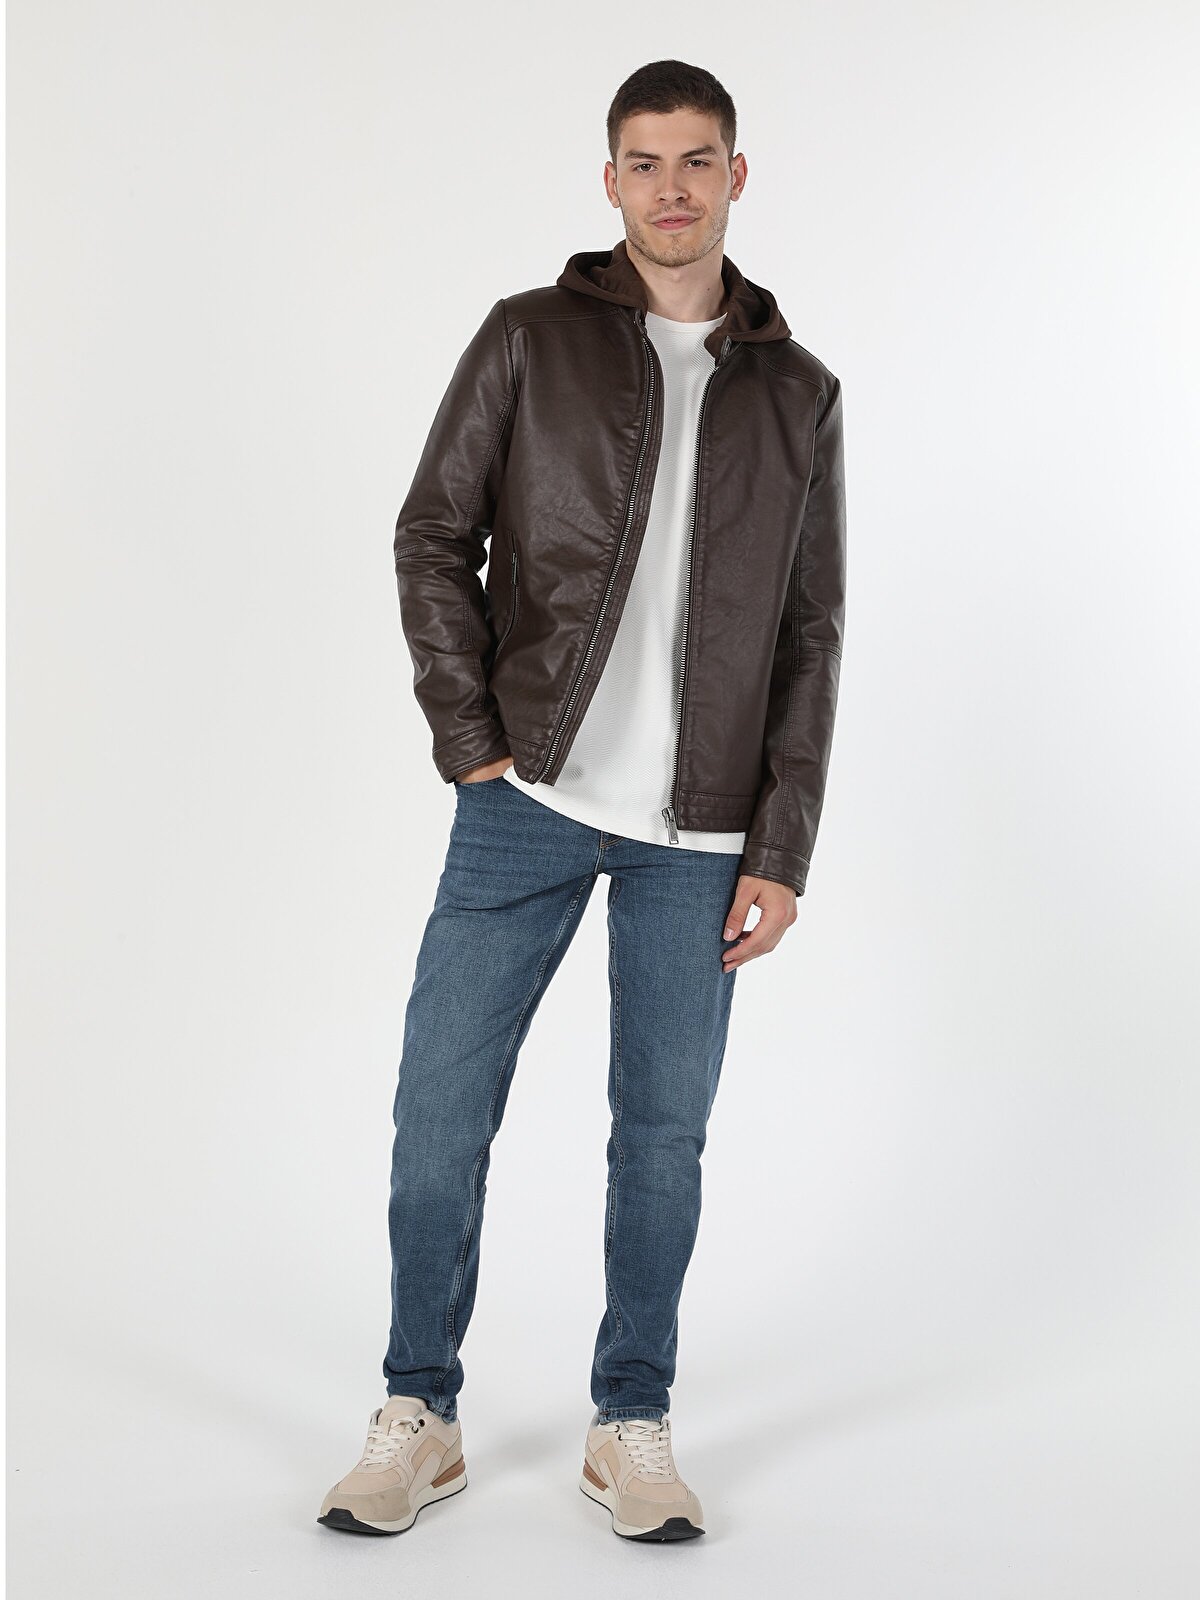 Кожаная куртка мужская Colin's CL1054817_Q1.V1 коричневая M